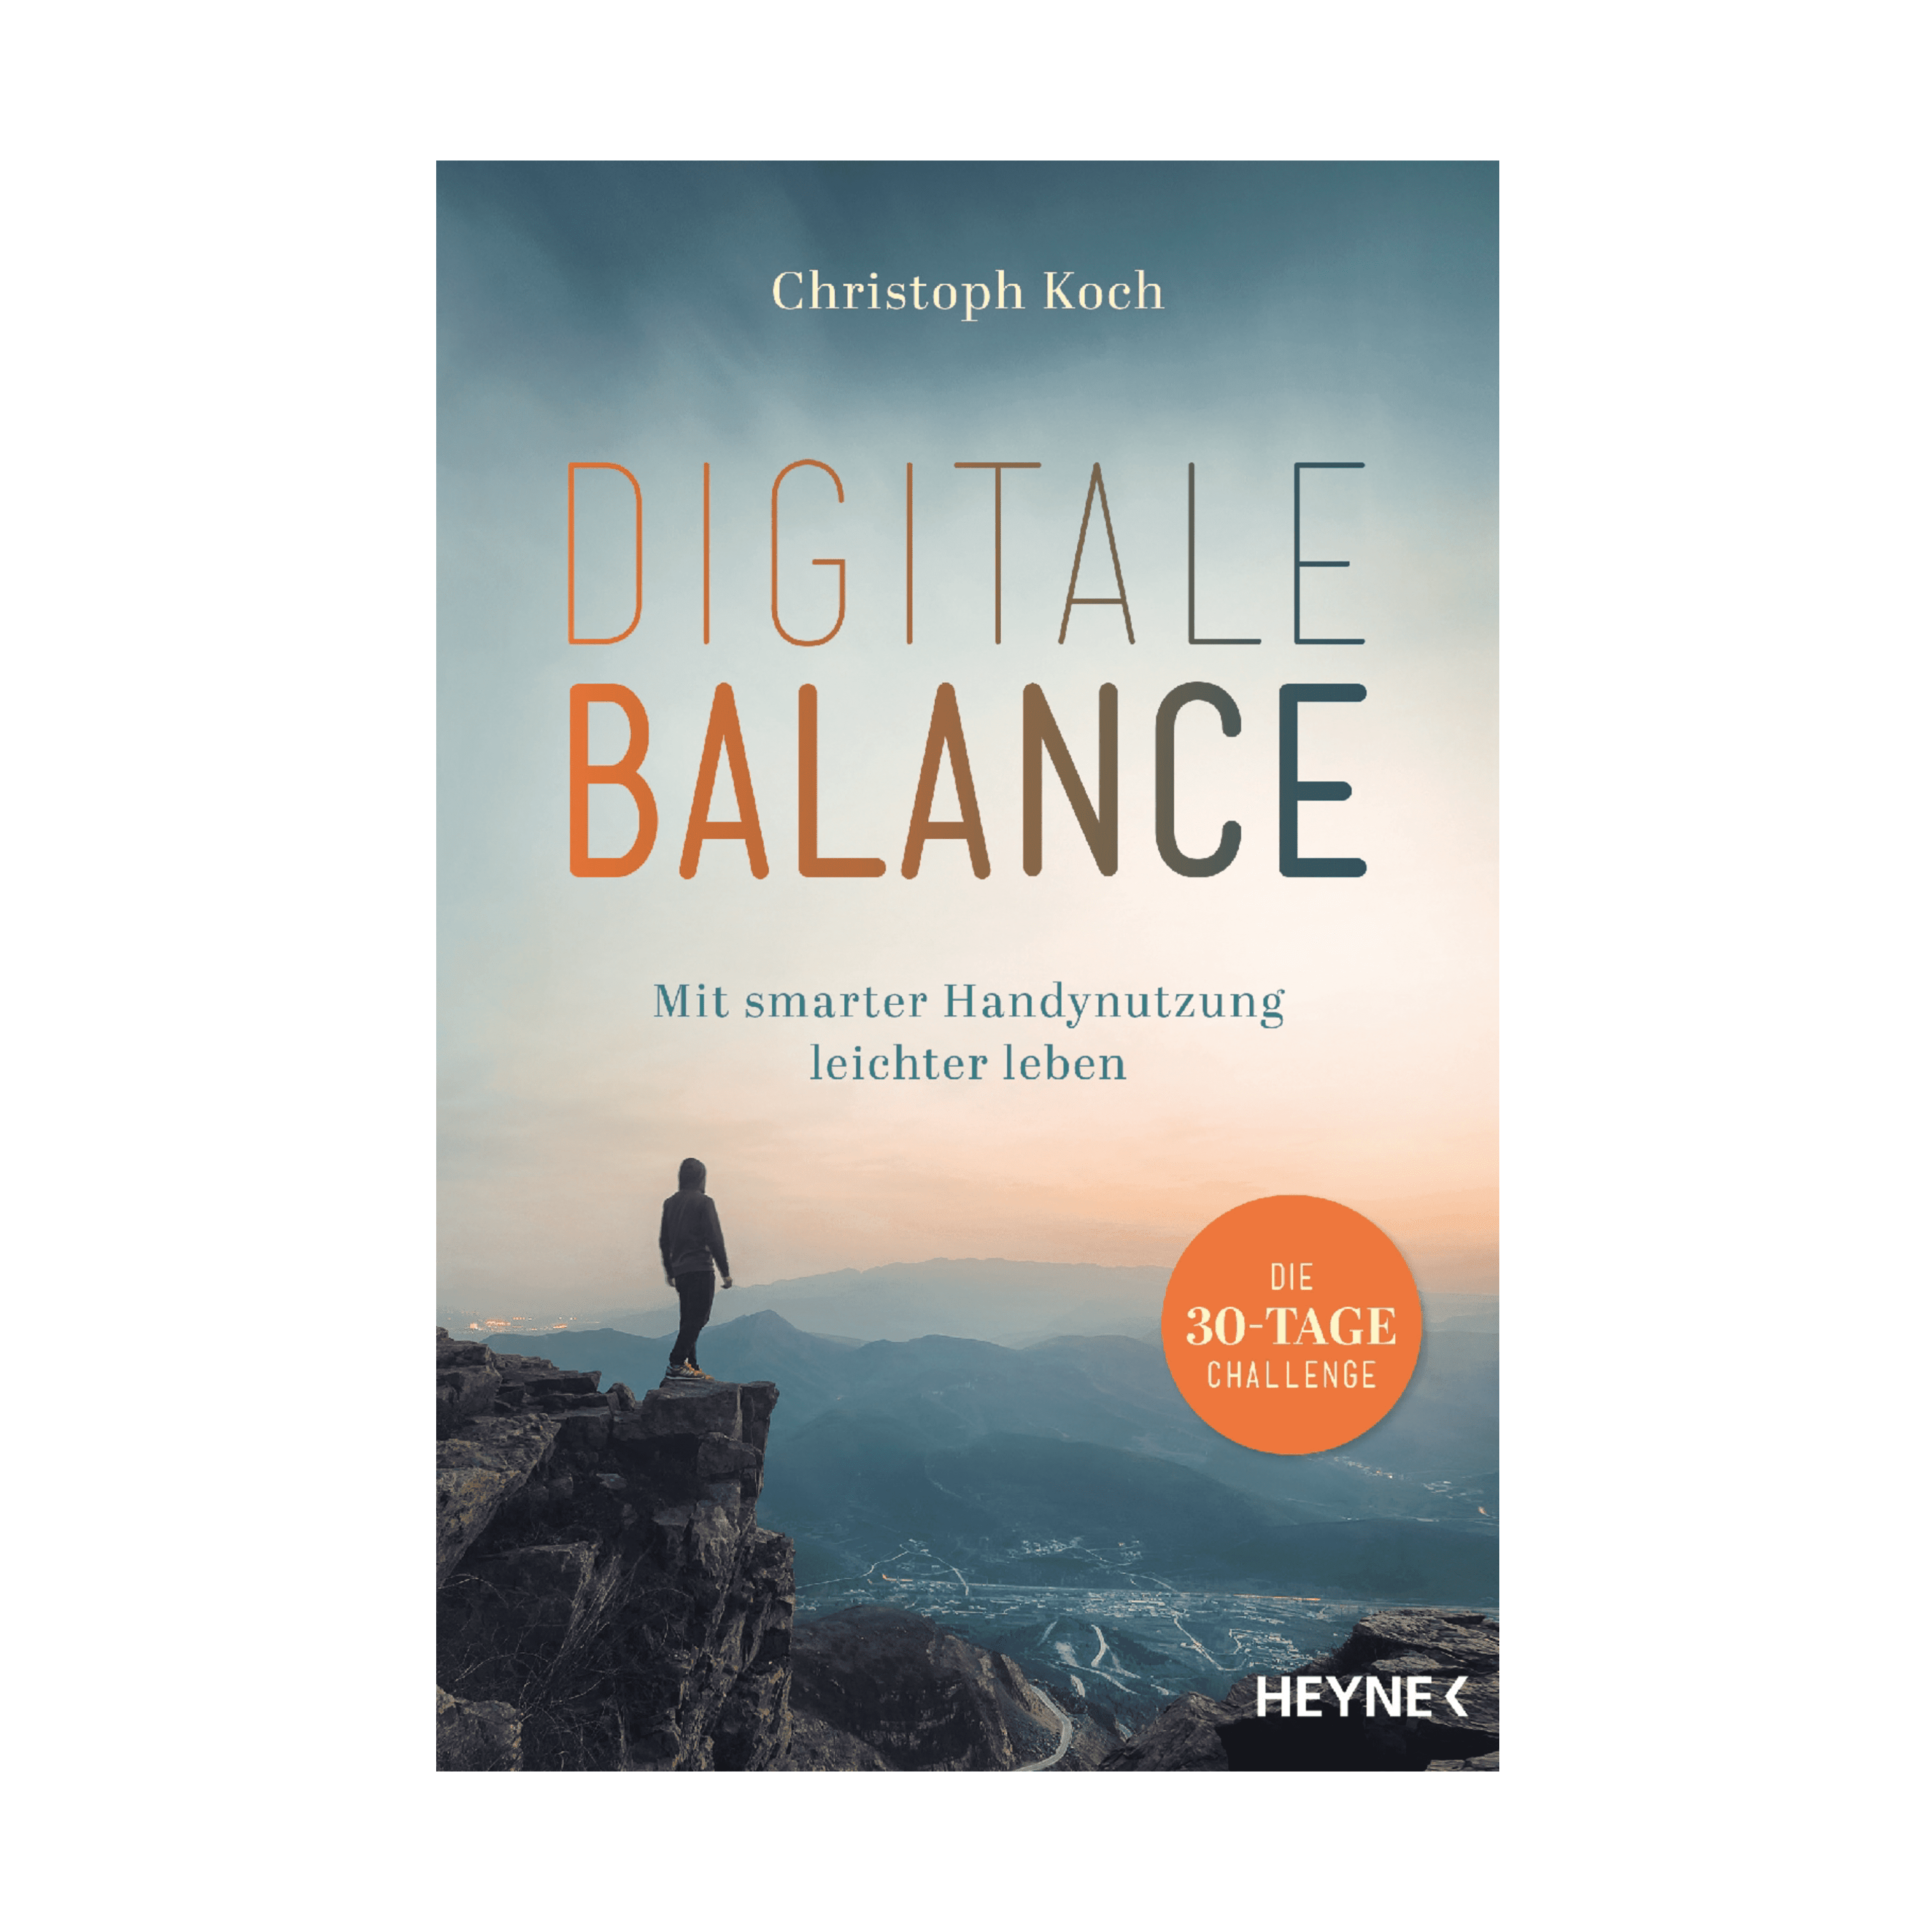 Bog kaldet Digital Balance